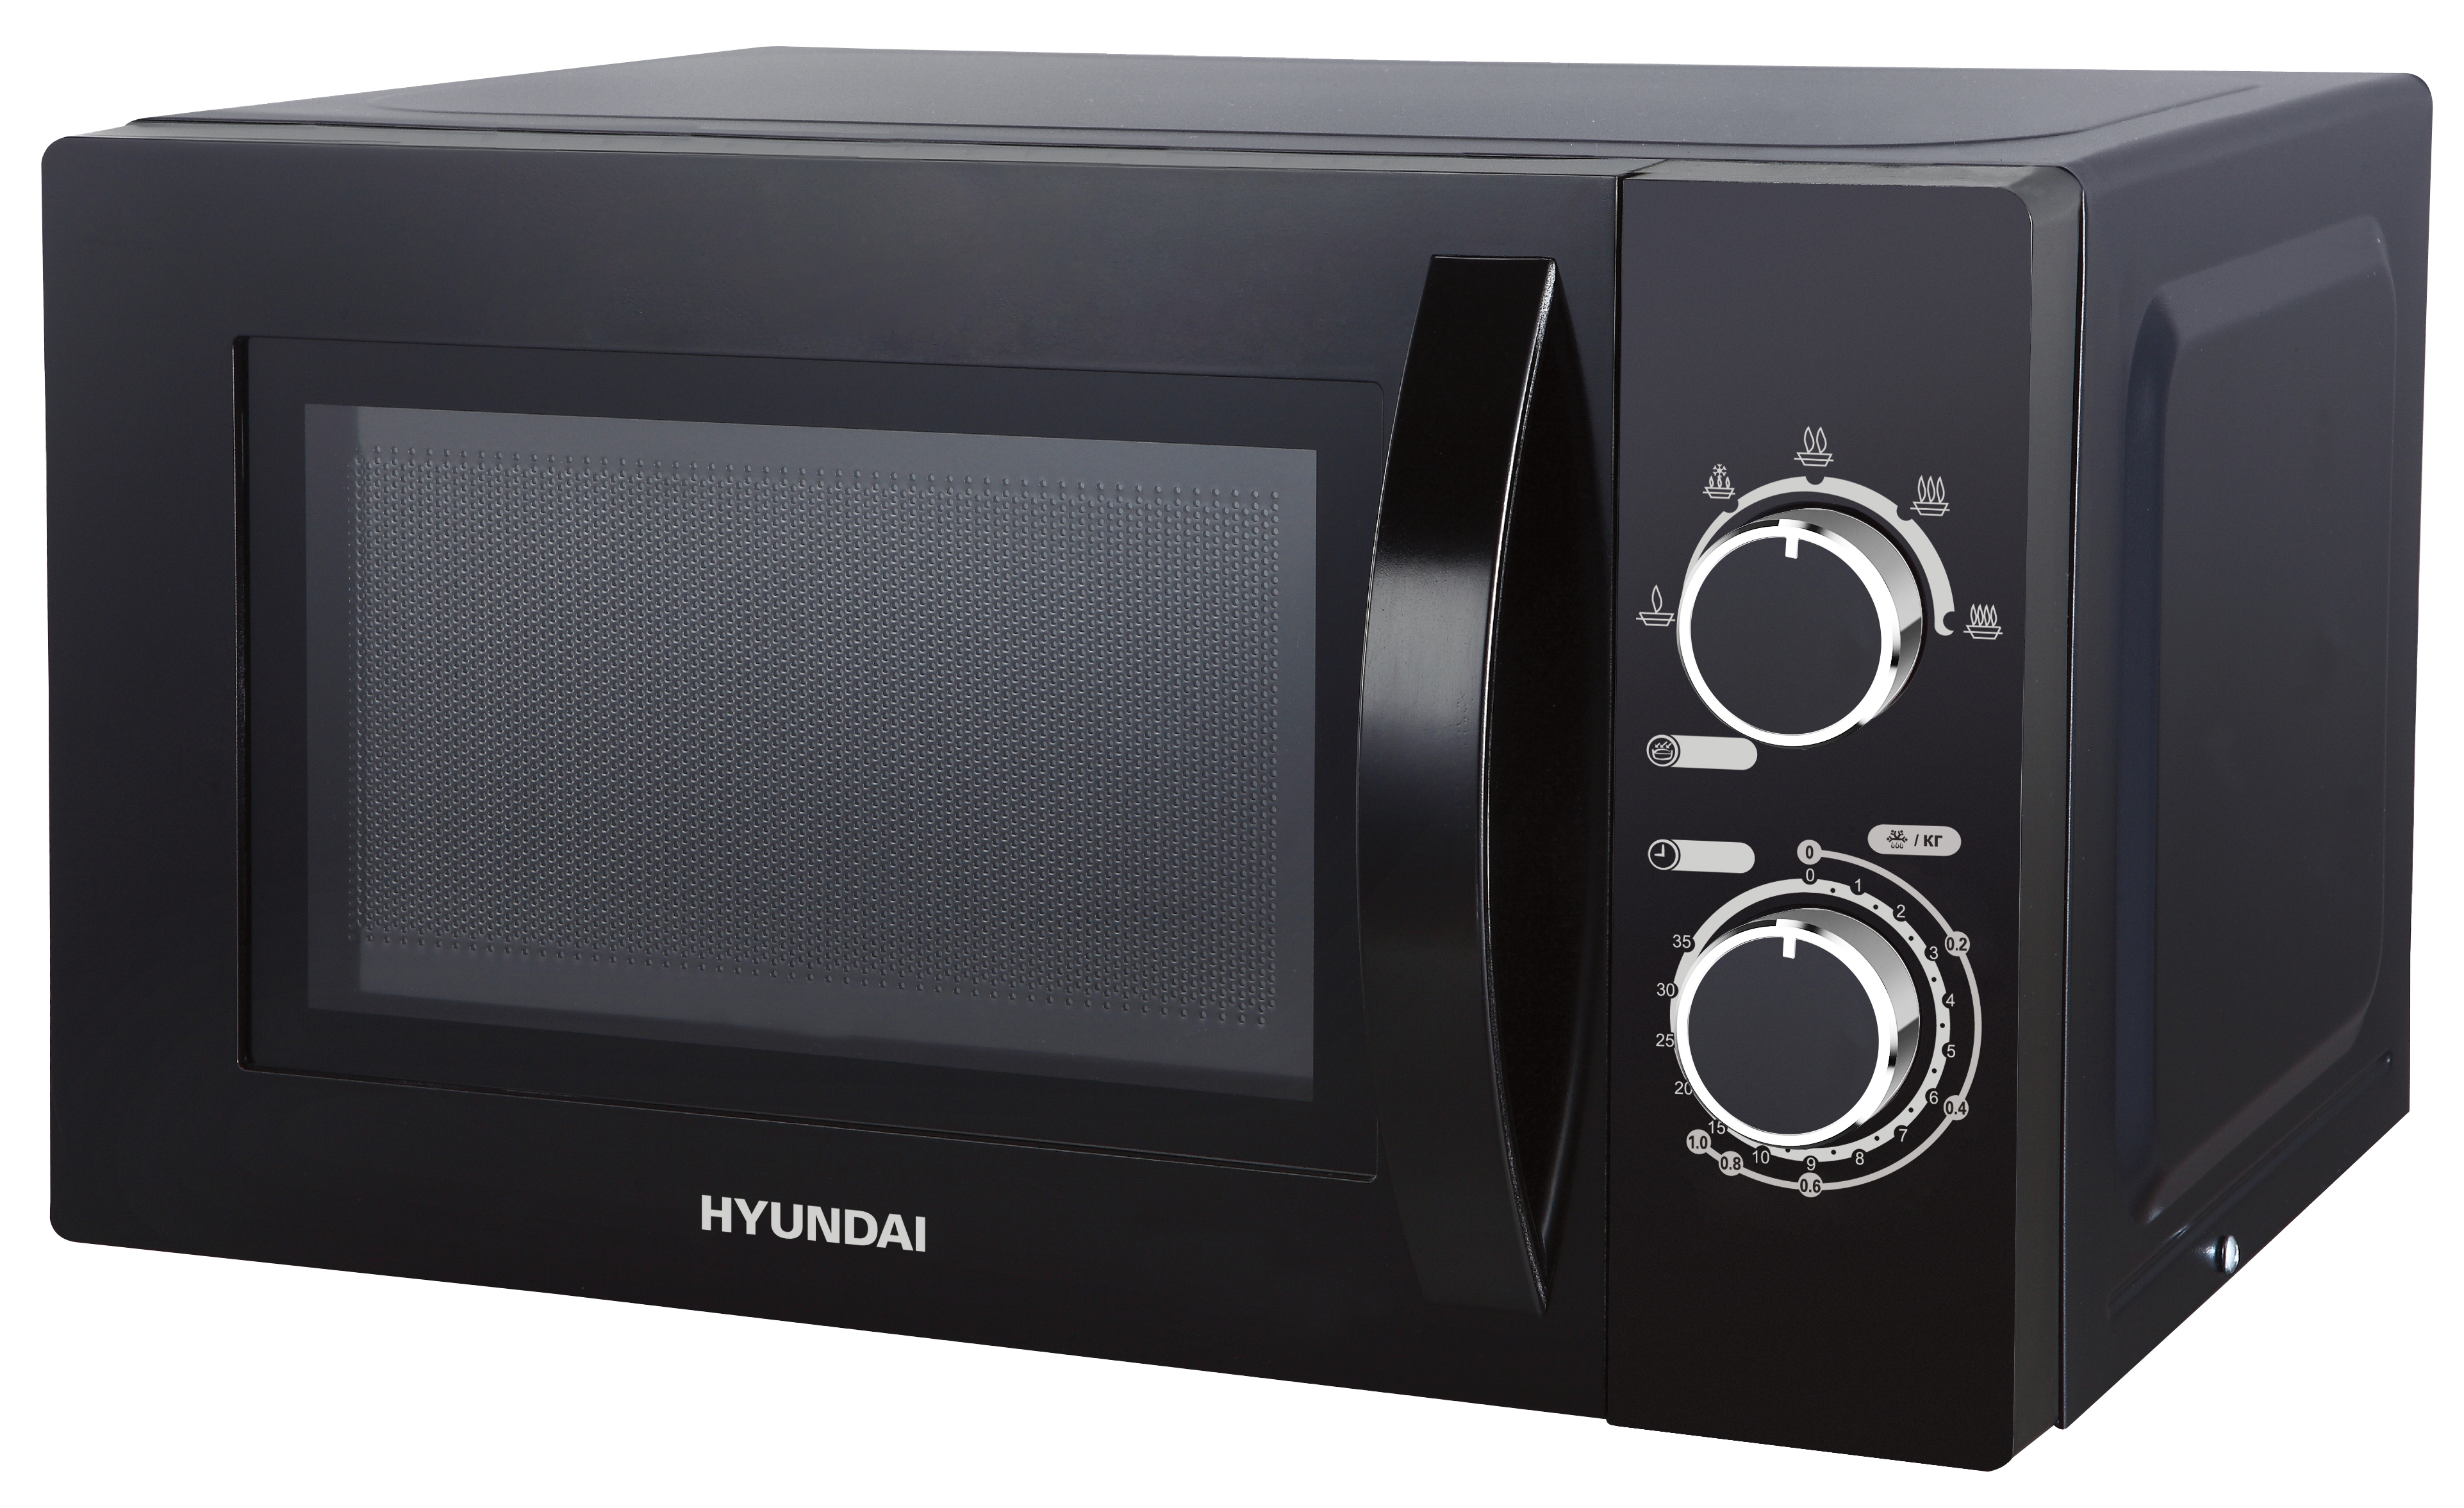 Микроволновая печь haier купить. Микроволновая печь Соло Hyundai HYM-m2063 Black. Микроволновая печь Hyundai HYM-m2060. Микроволновая печь Hyundai HYM-m2007. Печь СВЧ Hyundai HYM-m2058.